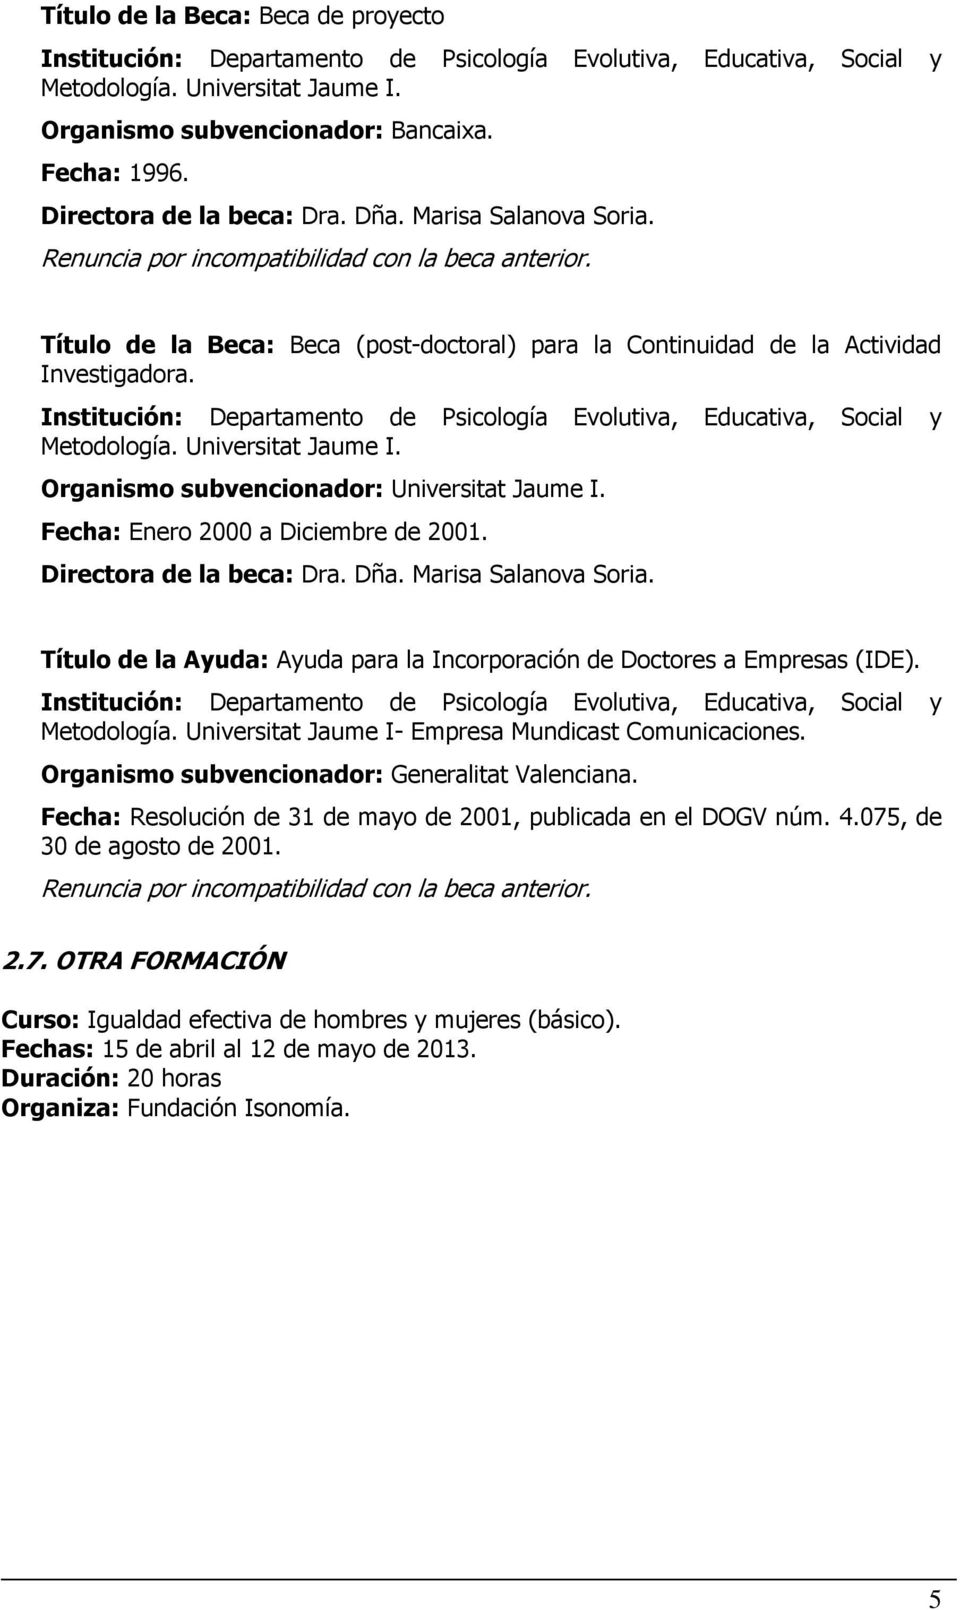 Institución: Departamento de Psicología Evolutiva, Educativa, Social y Metodología. Universitat Jaume I. Organismo subvencionador: Universitat Jaume I. Fecha: Enero 2000 a Diciembre de 2001.